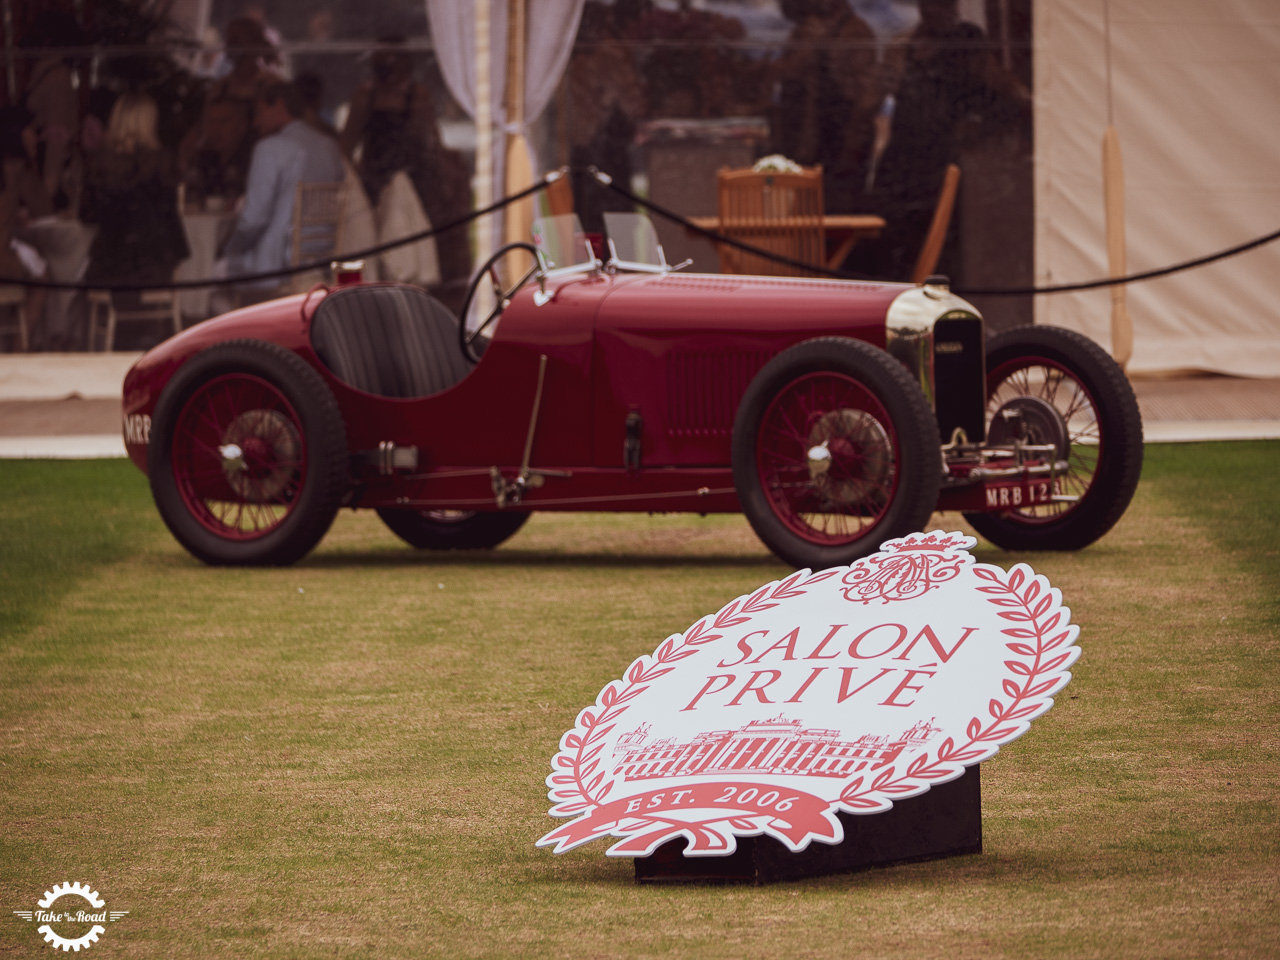 Le Salon Privé revient avec cinq jours de célébration de l'excellence automobile